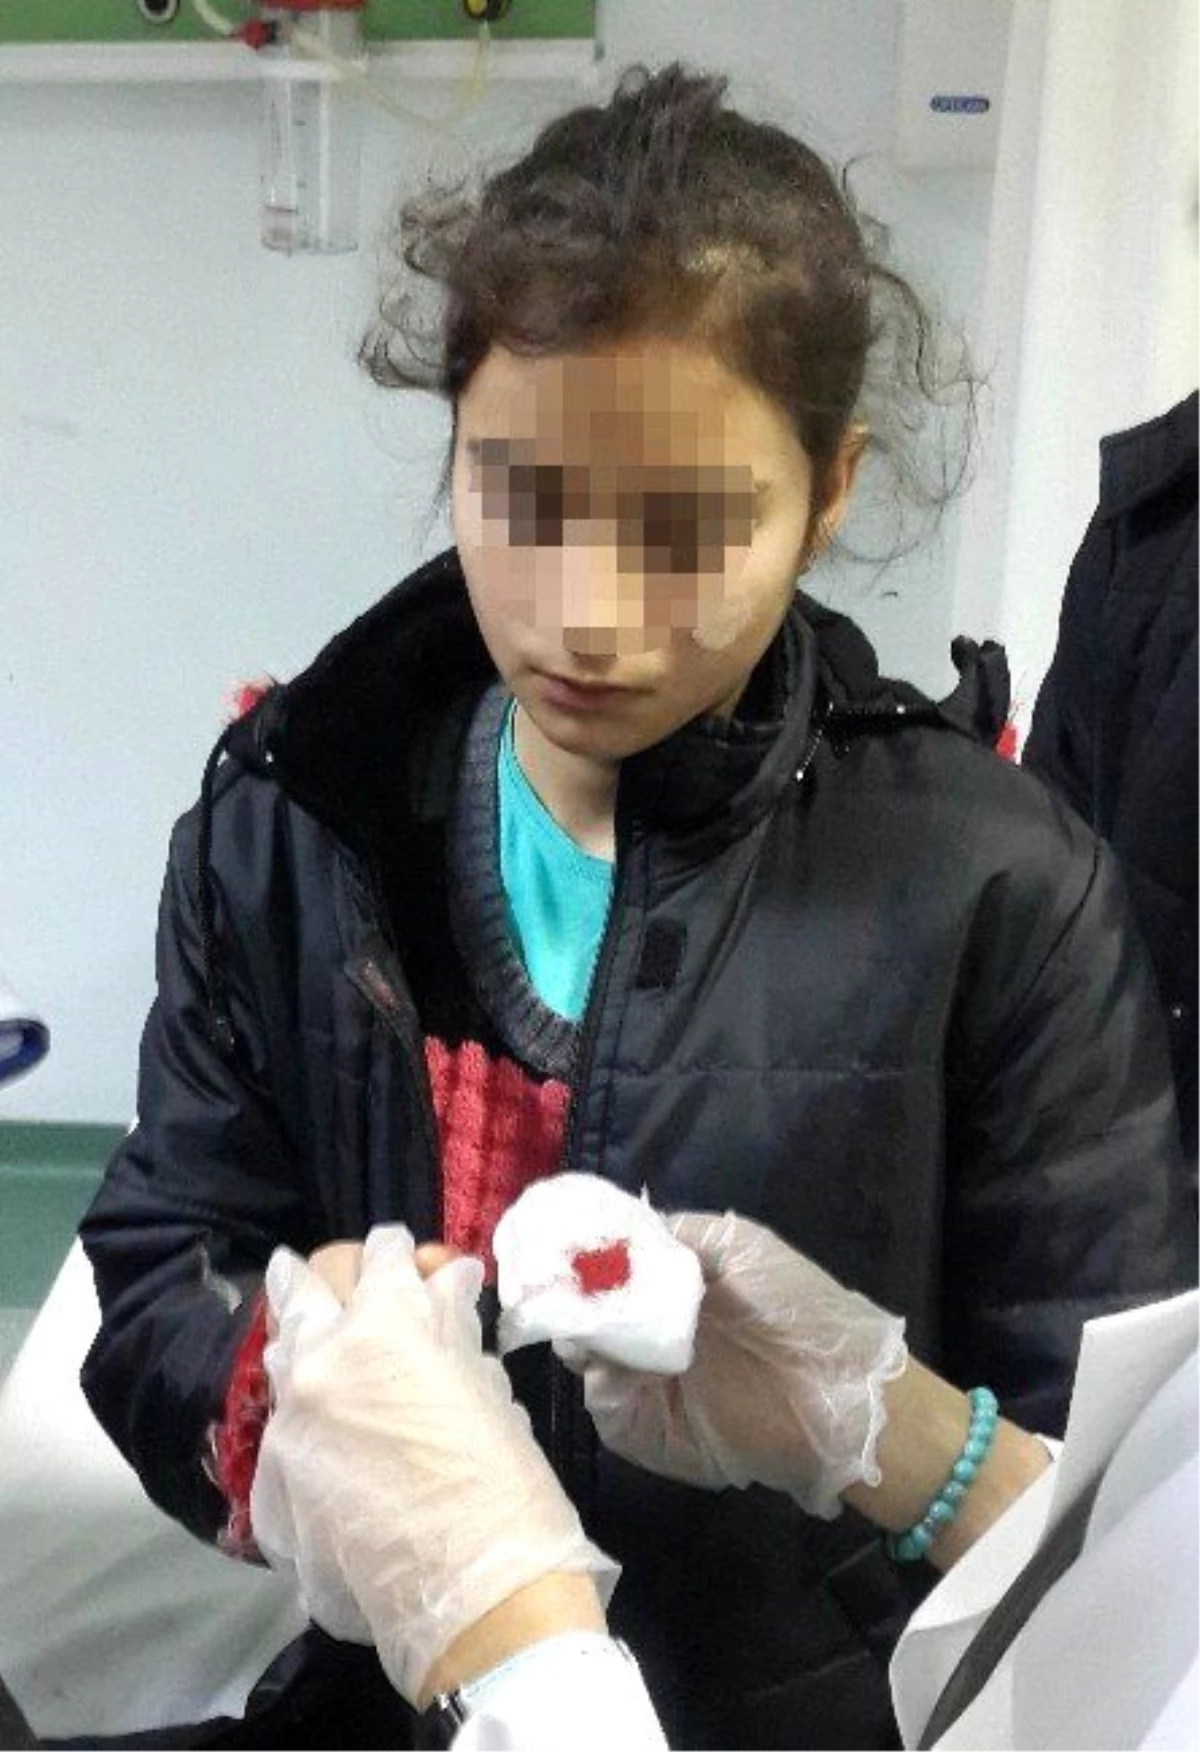 13 Yaşındaki Kız Çocuğu Avcılar Tarafından Vuruldu